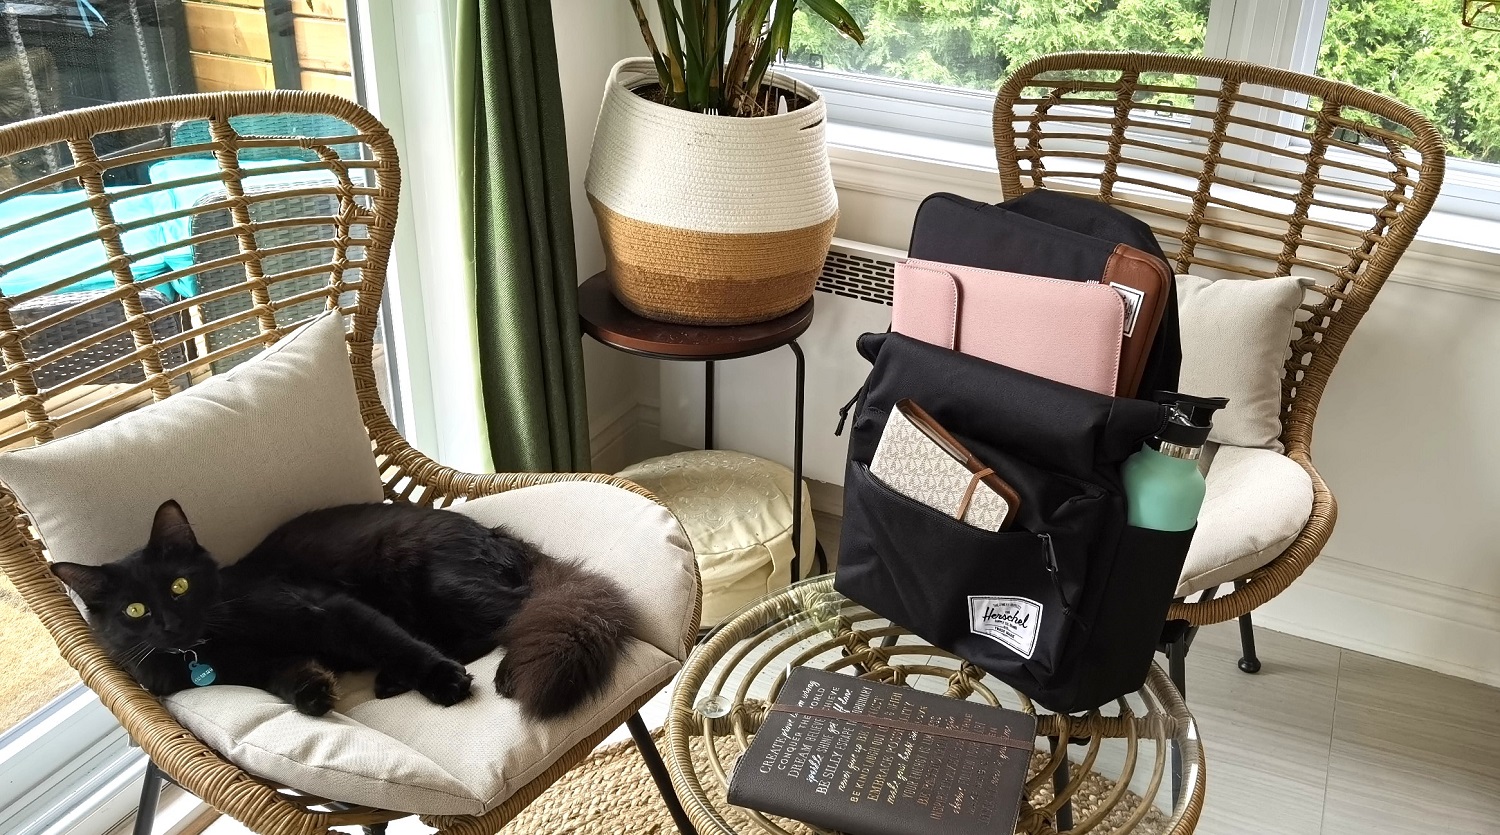 Herschel sac à dos sur une chaise avec un chat